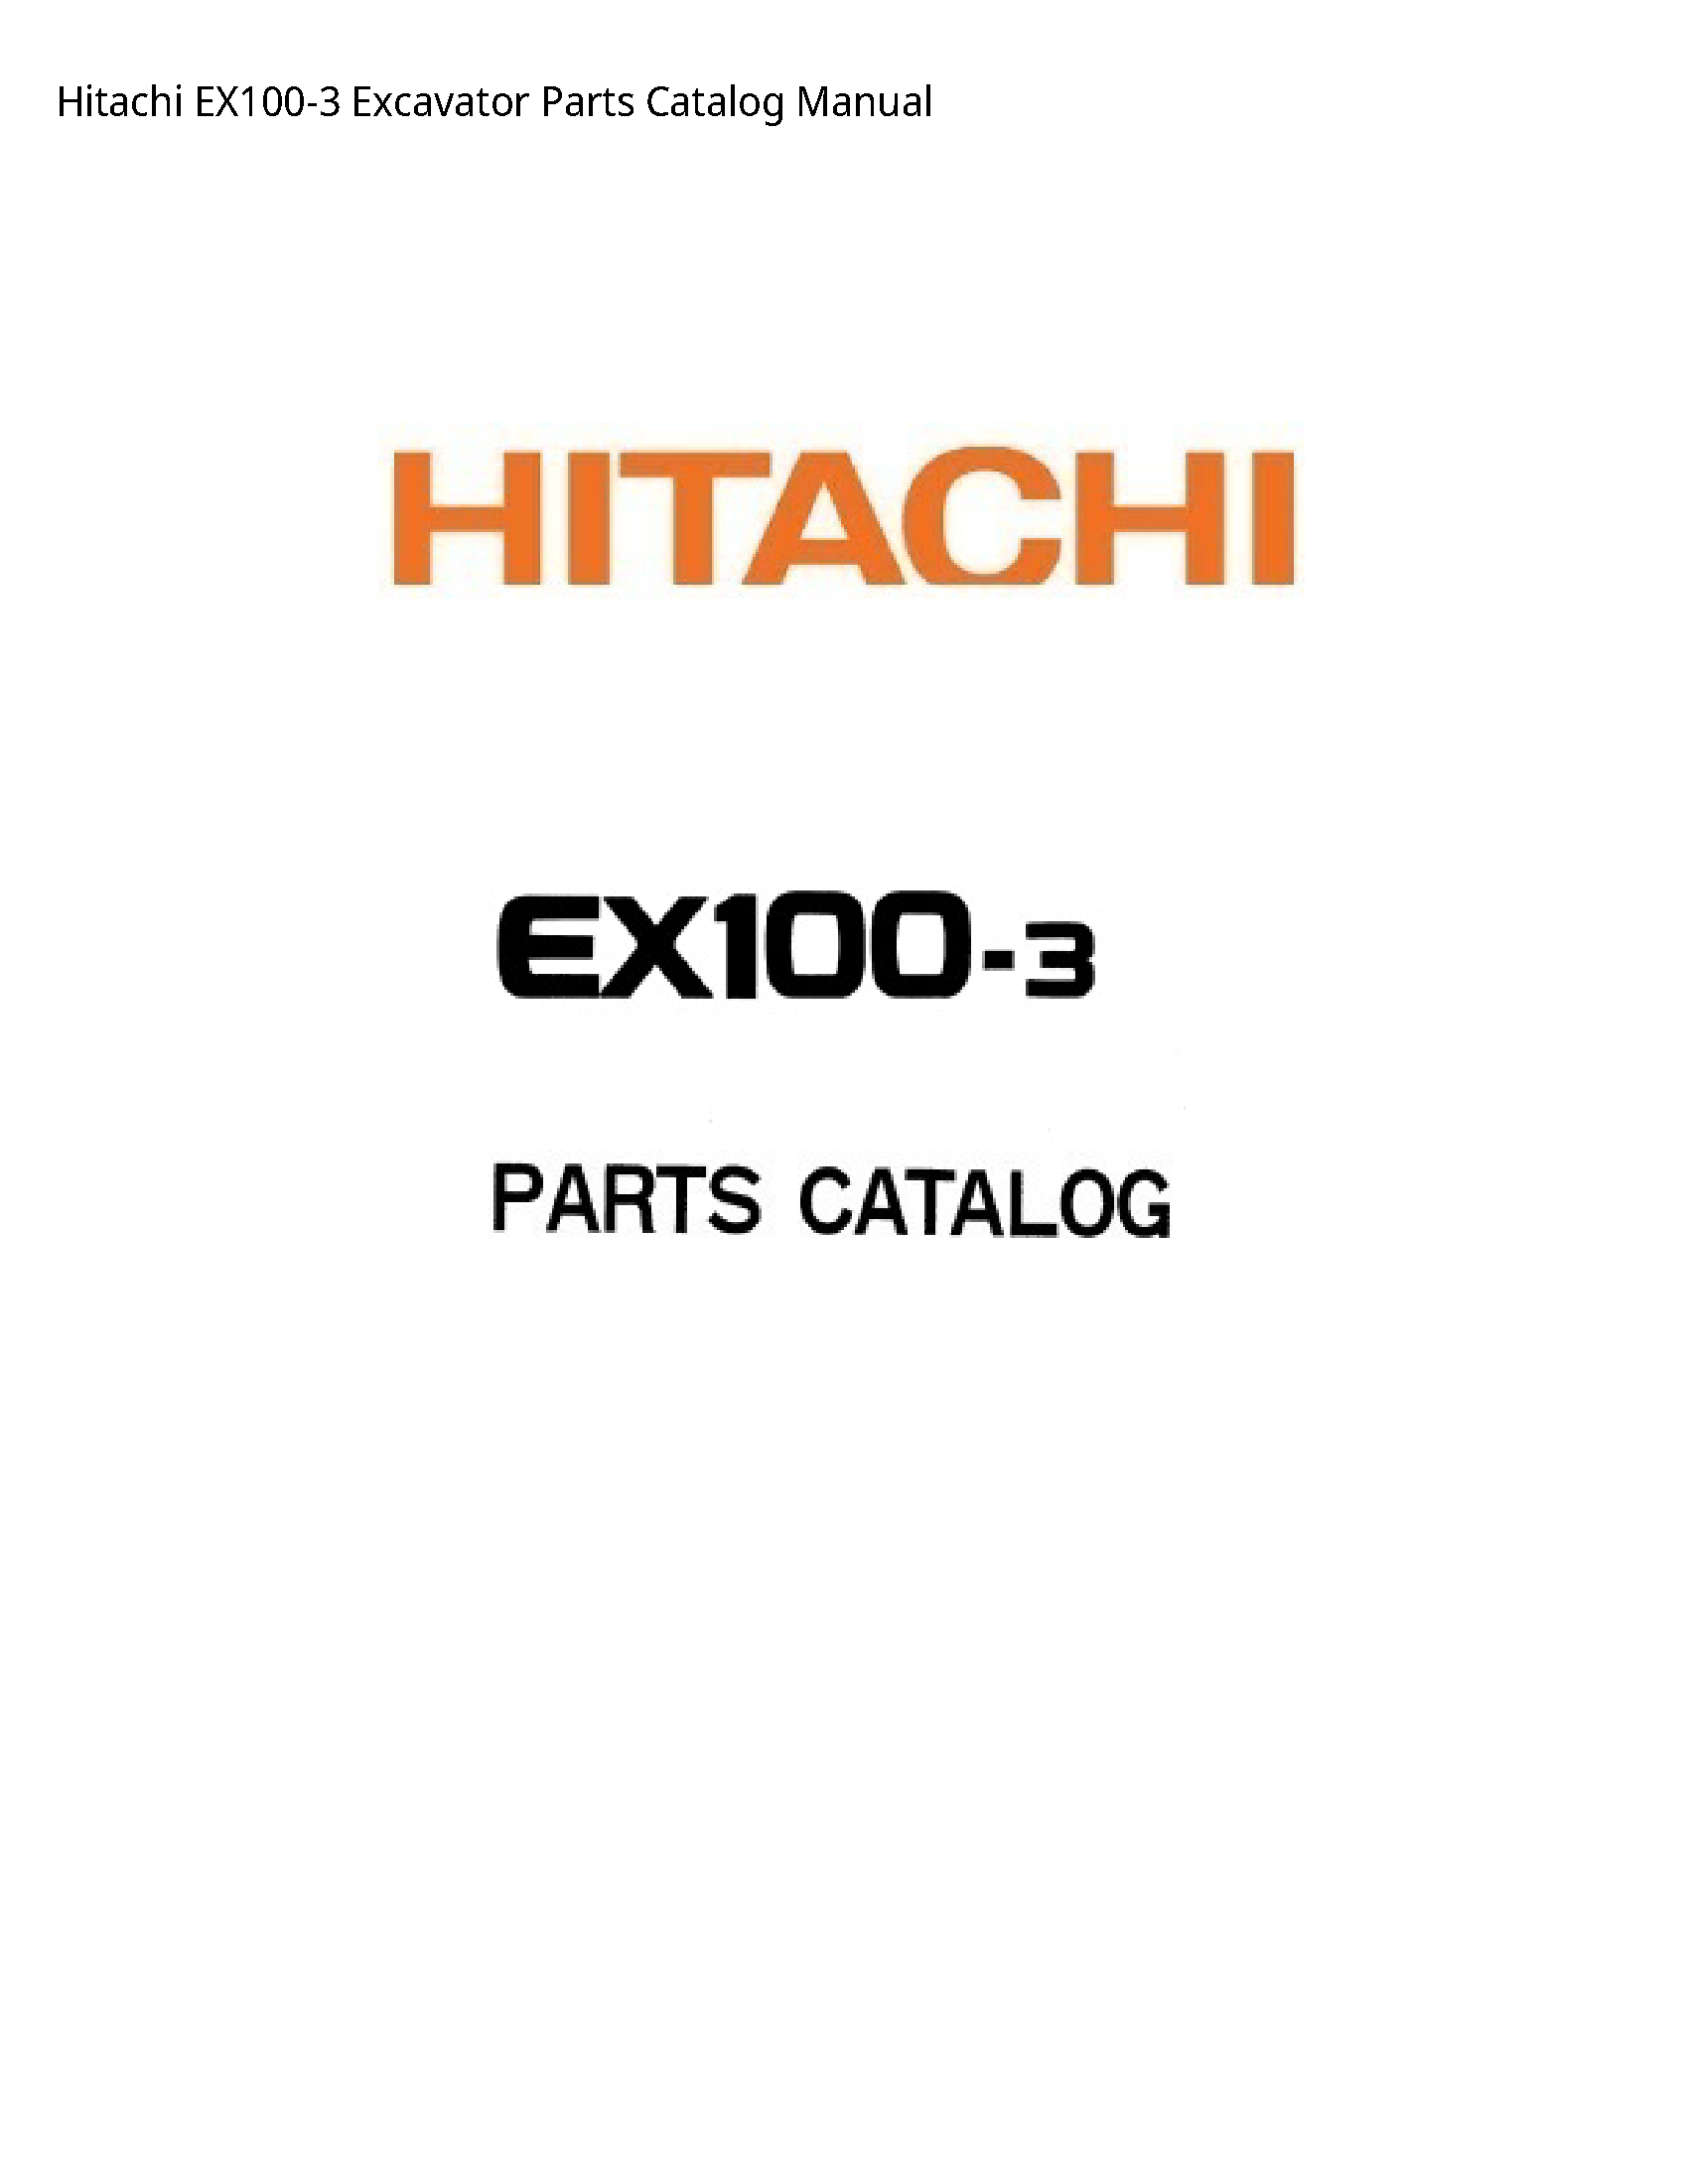 Hitachi EX100-3 Excavator Parts Catalog manual